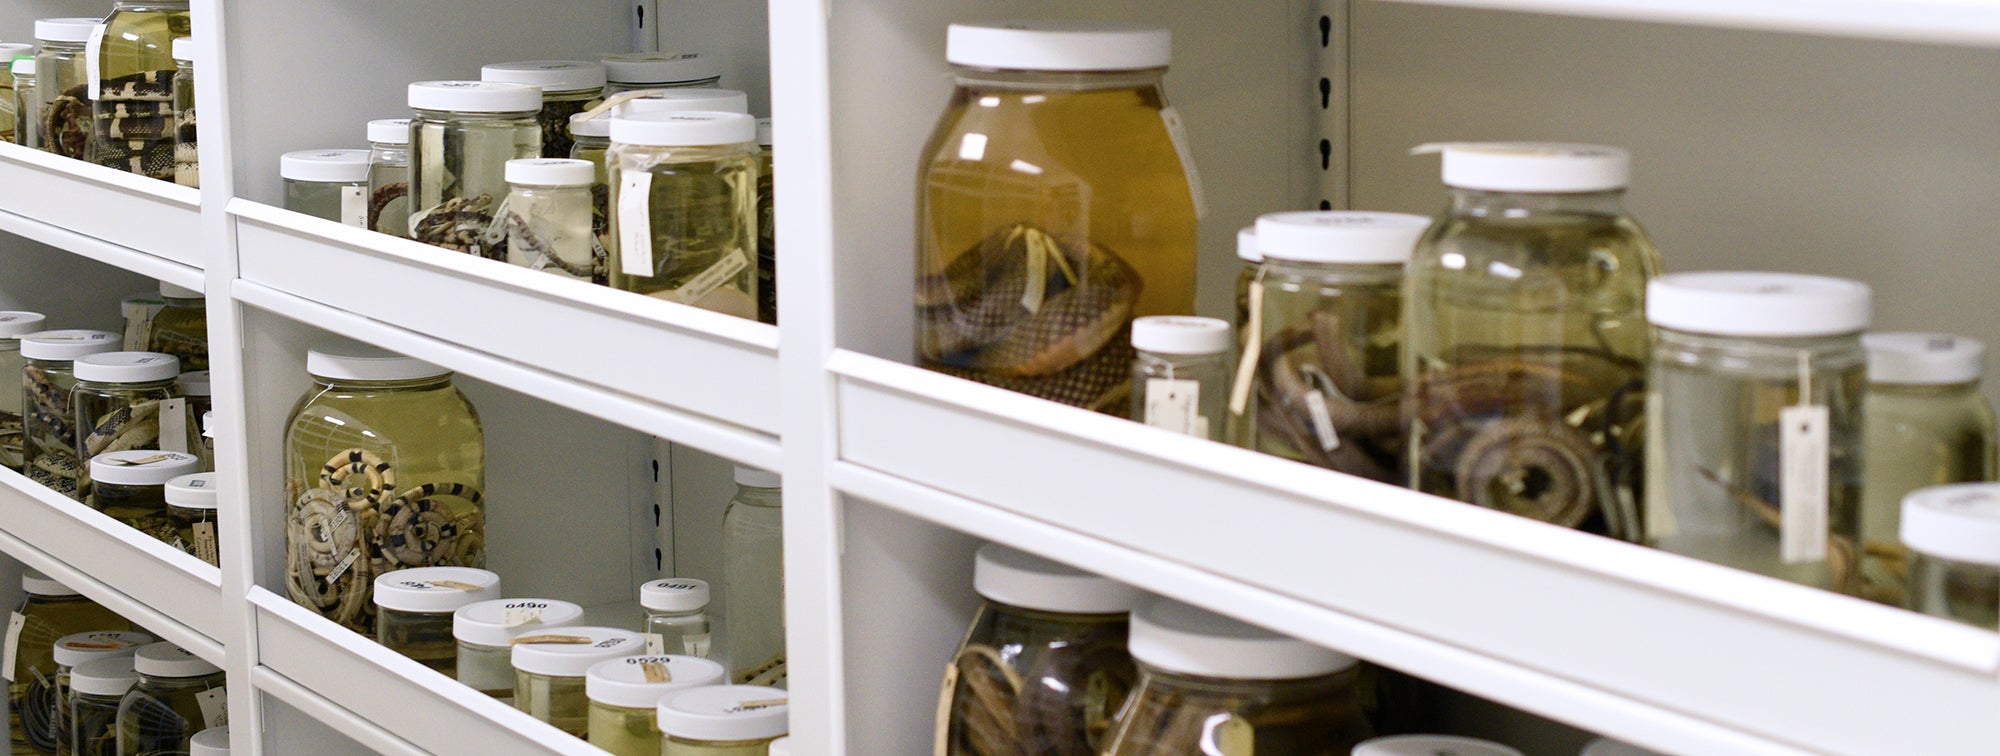 snake specimens in jars